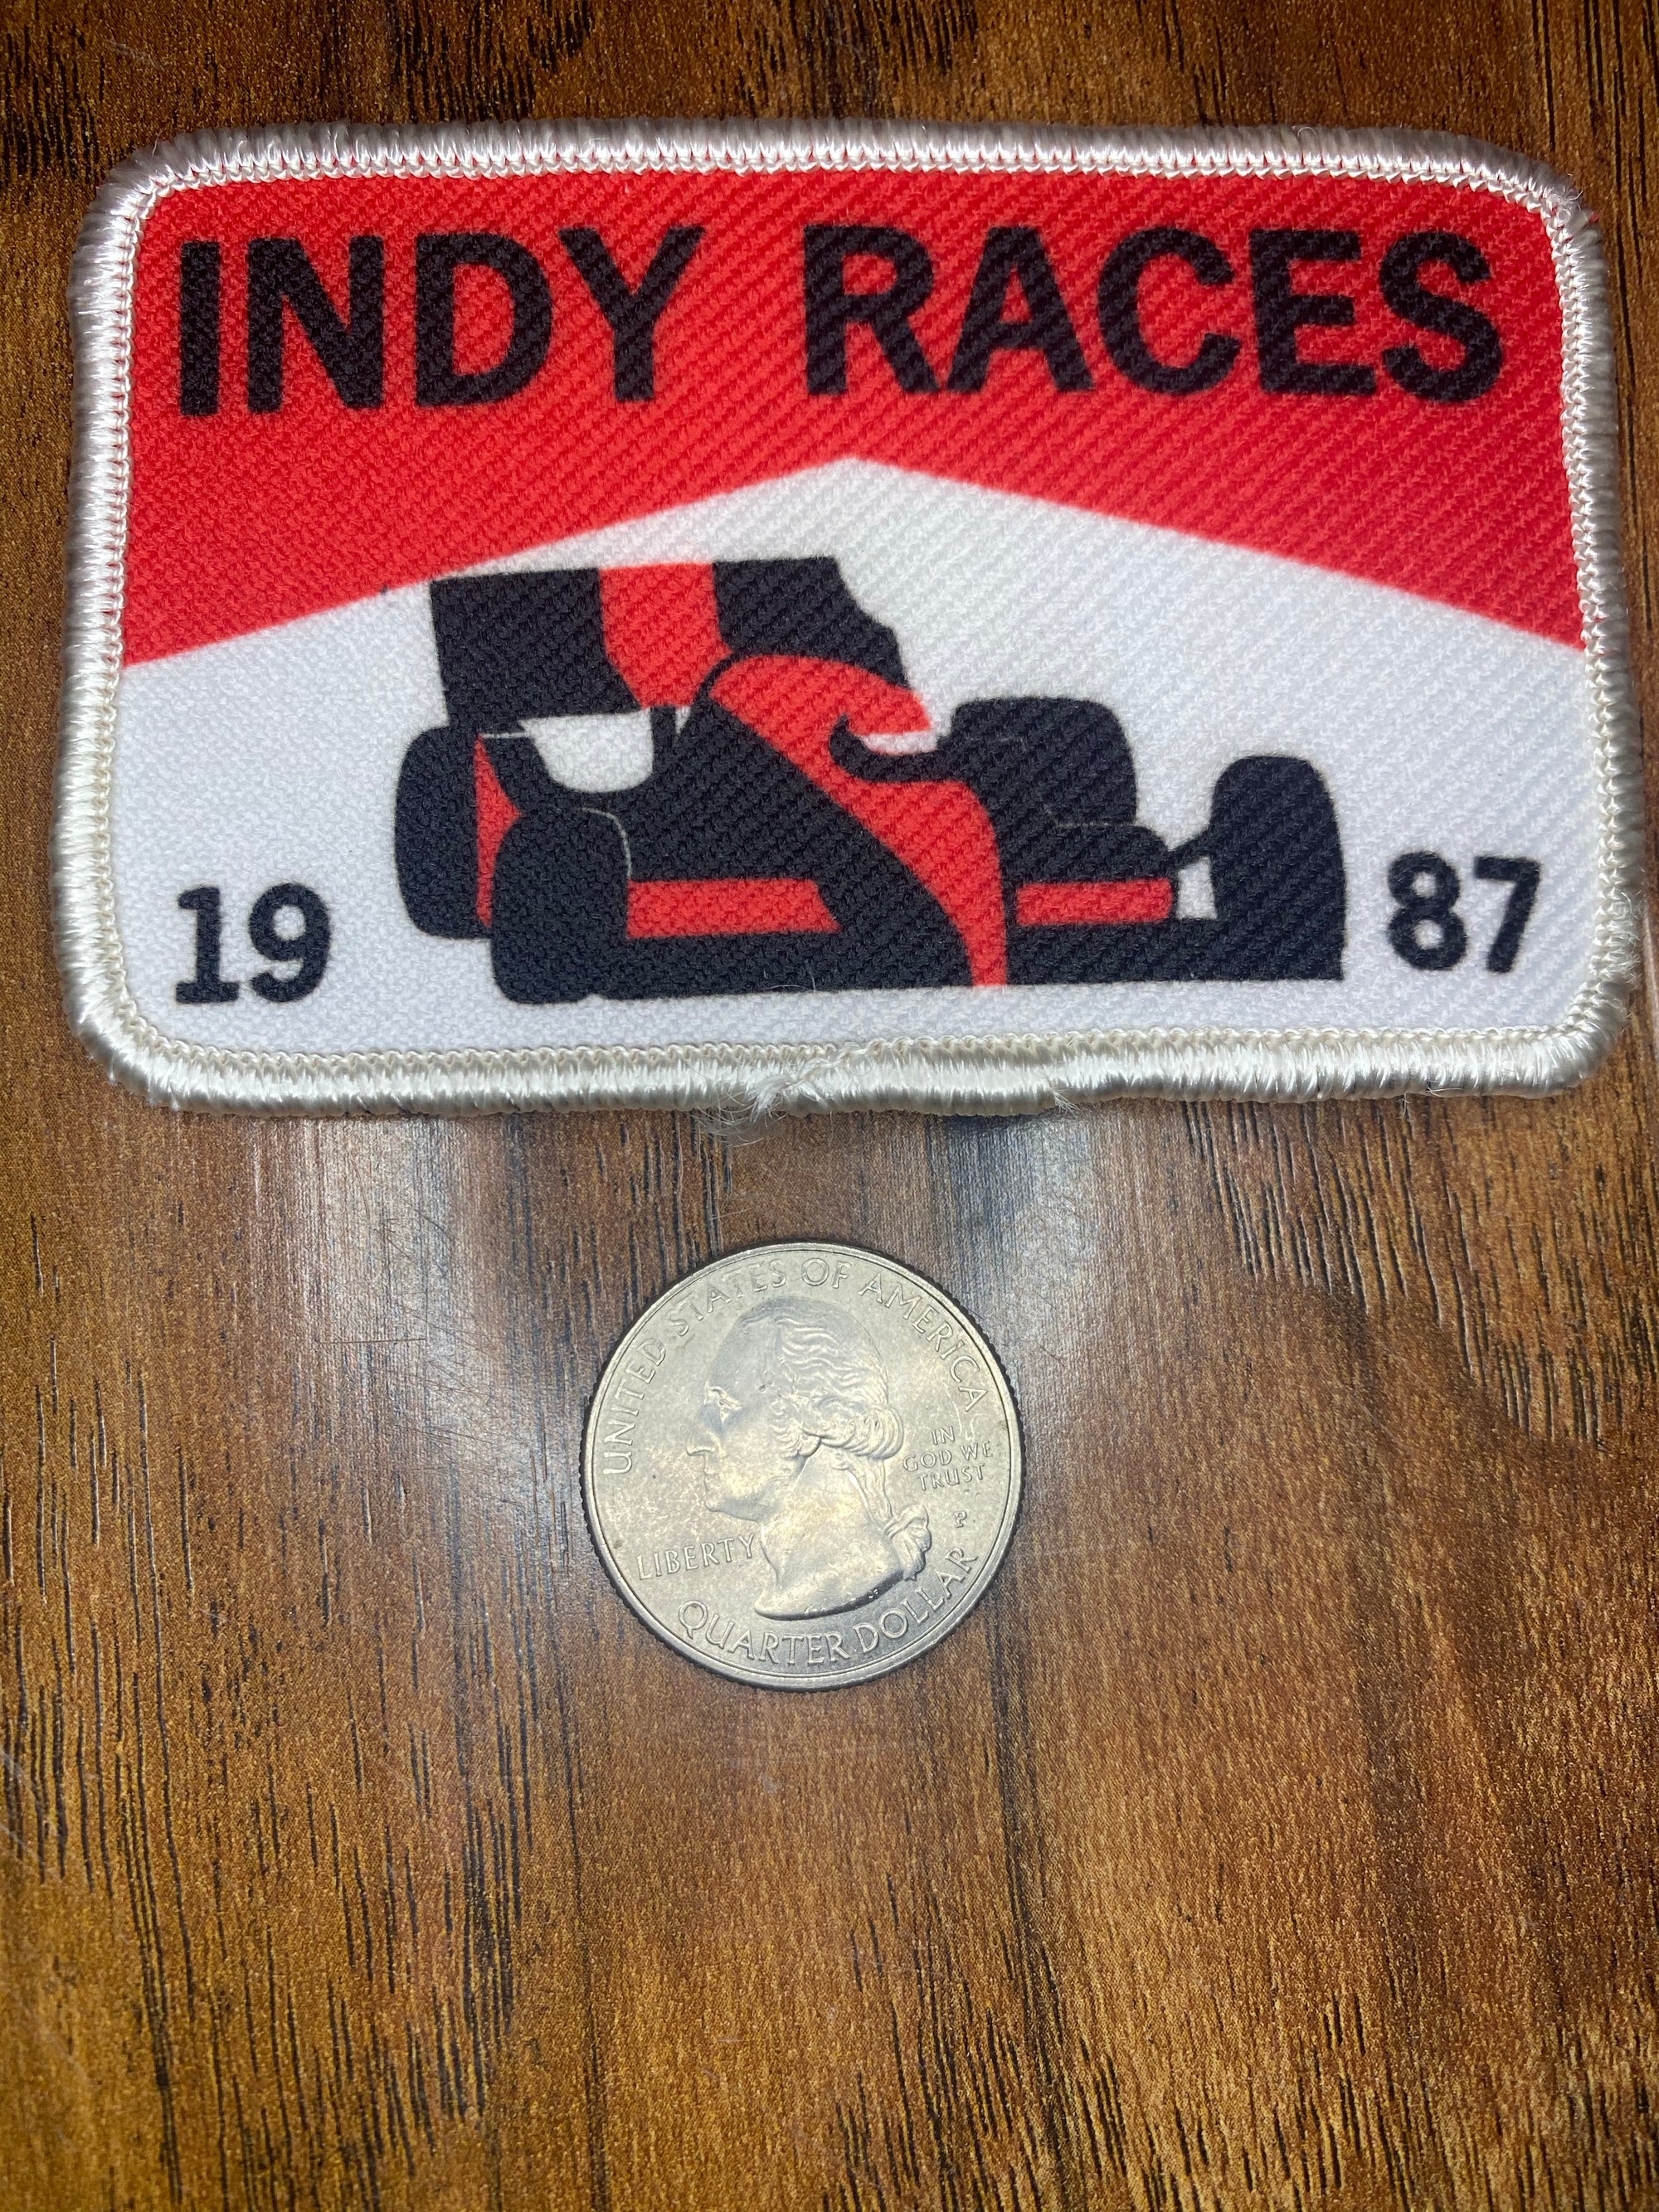 Vintage Indy Races 1987